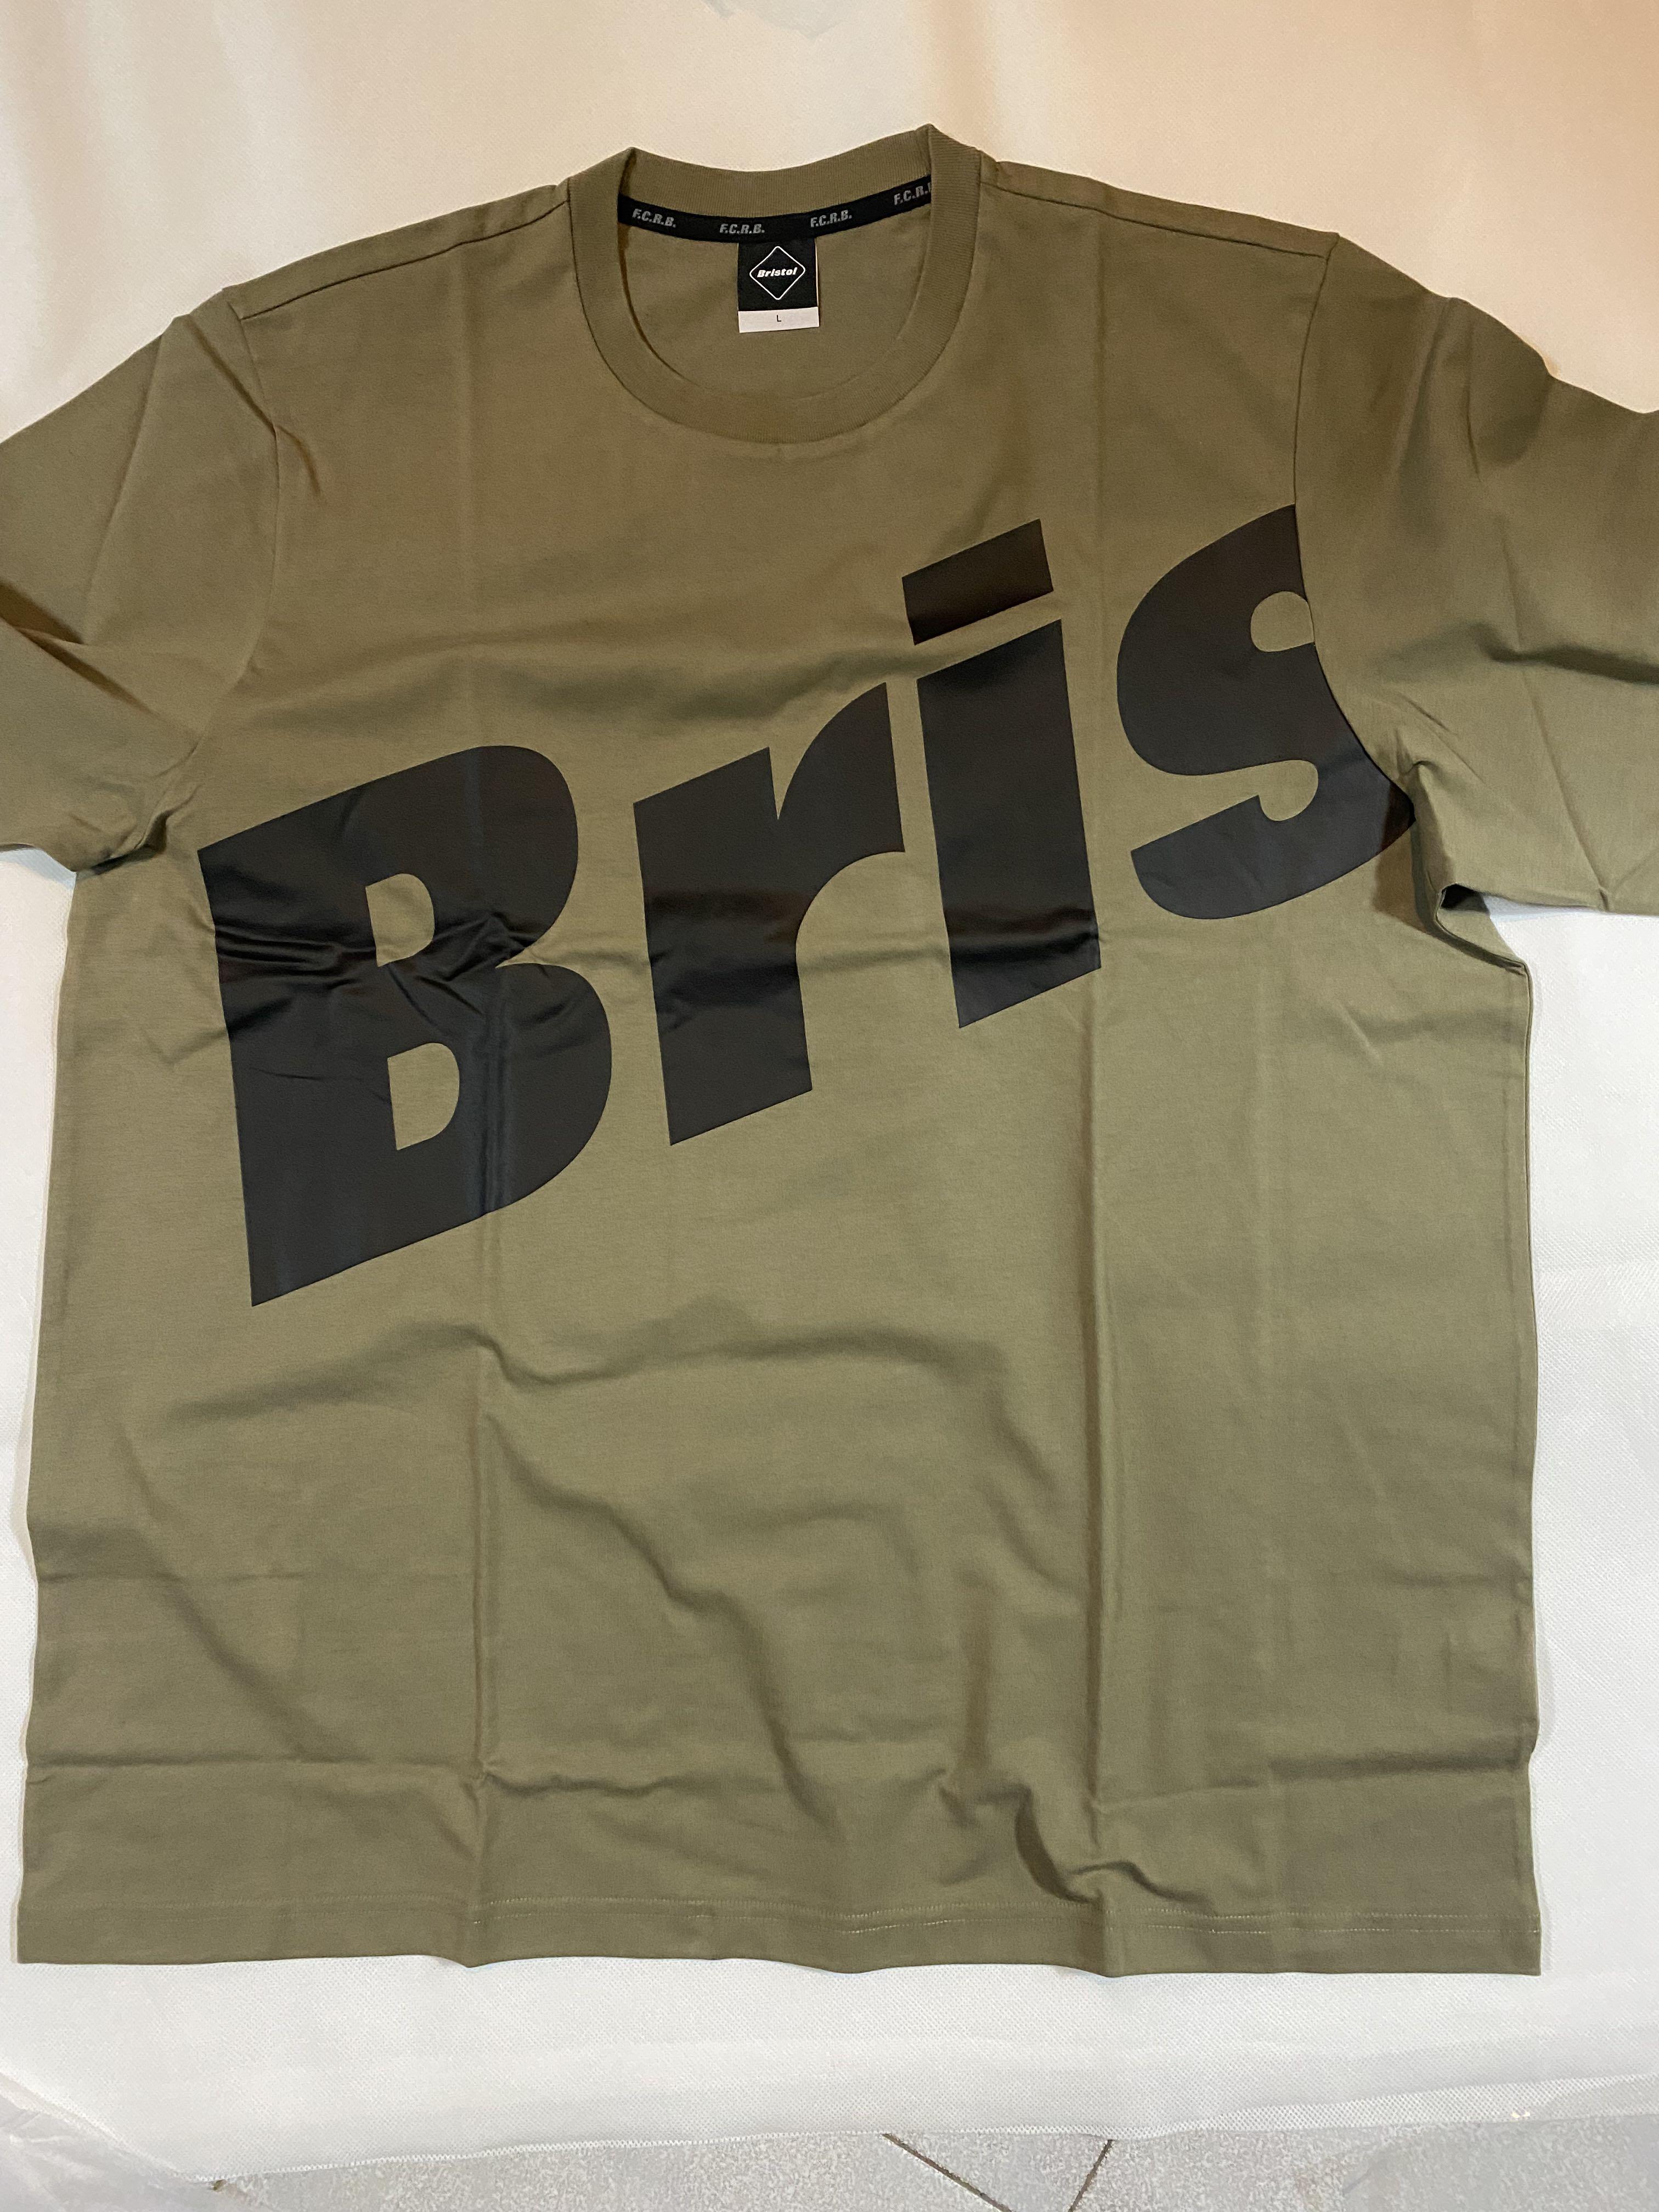 【大量購入】FCRB RELAX FIT BIG BRIS LOGO TEE ベージュL Tシャツ/カットソー(半袖/袖なし)